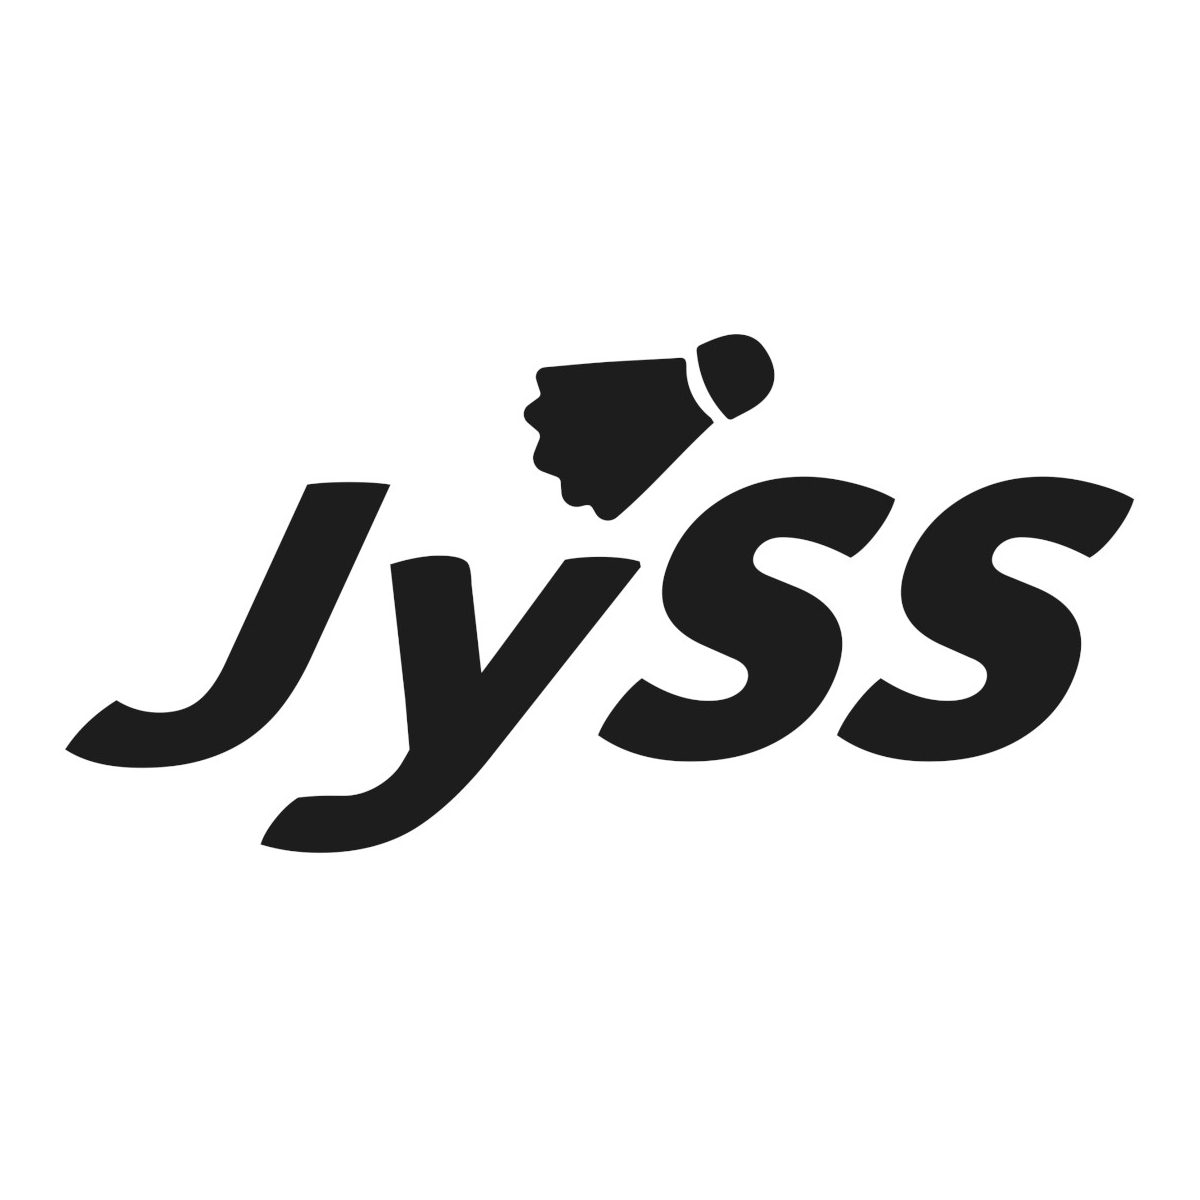 jyss_logo_1200x1200.jpg